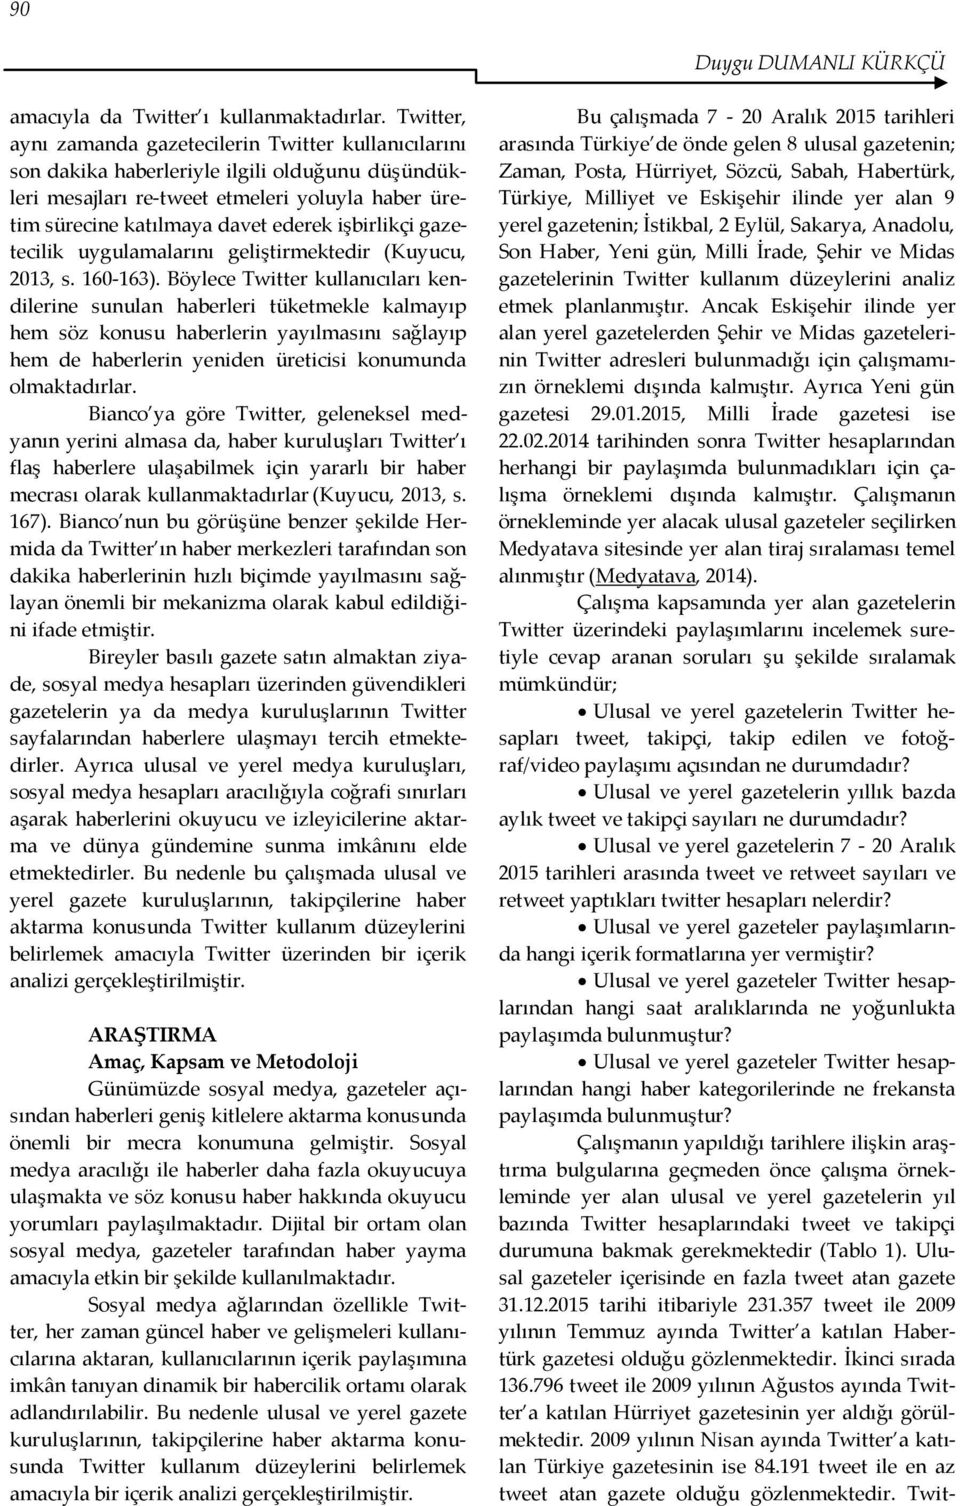 işbirlikçi gazetecilik uygulamalarını geliştirmektedir (Kuyucu, 2013, s. 160-163).